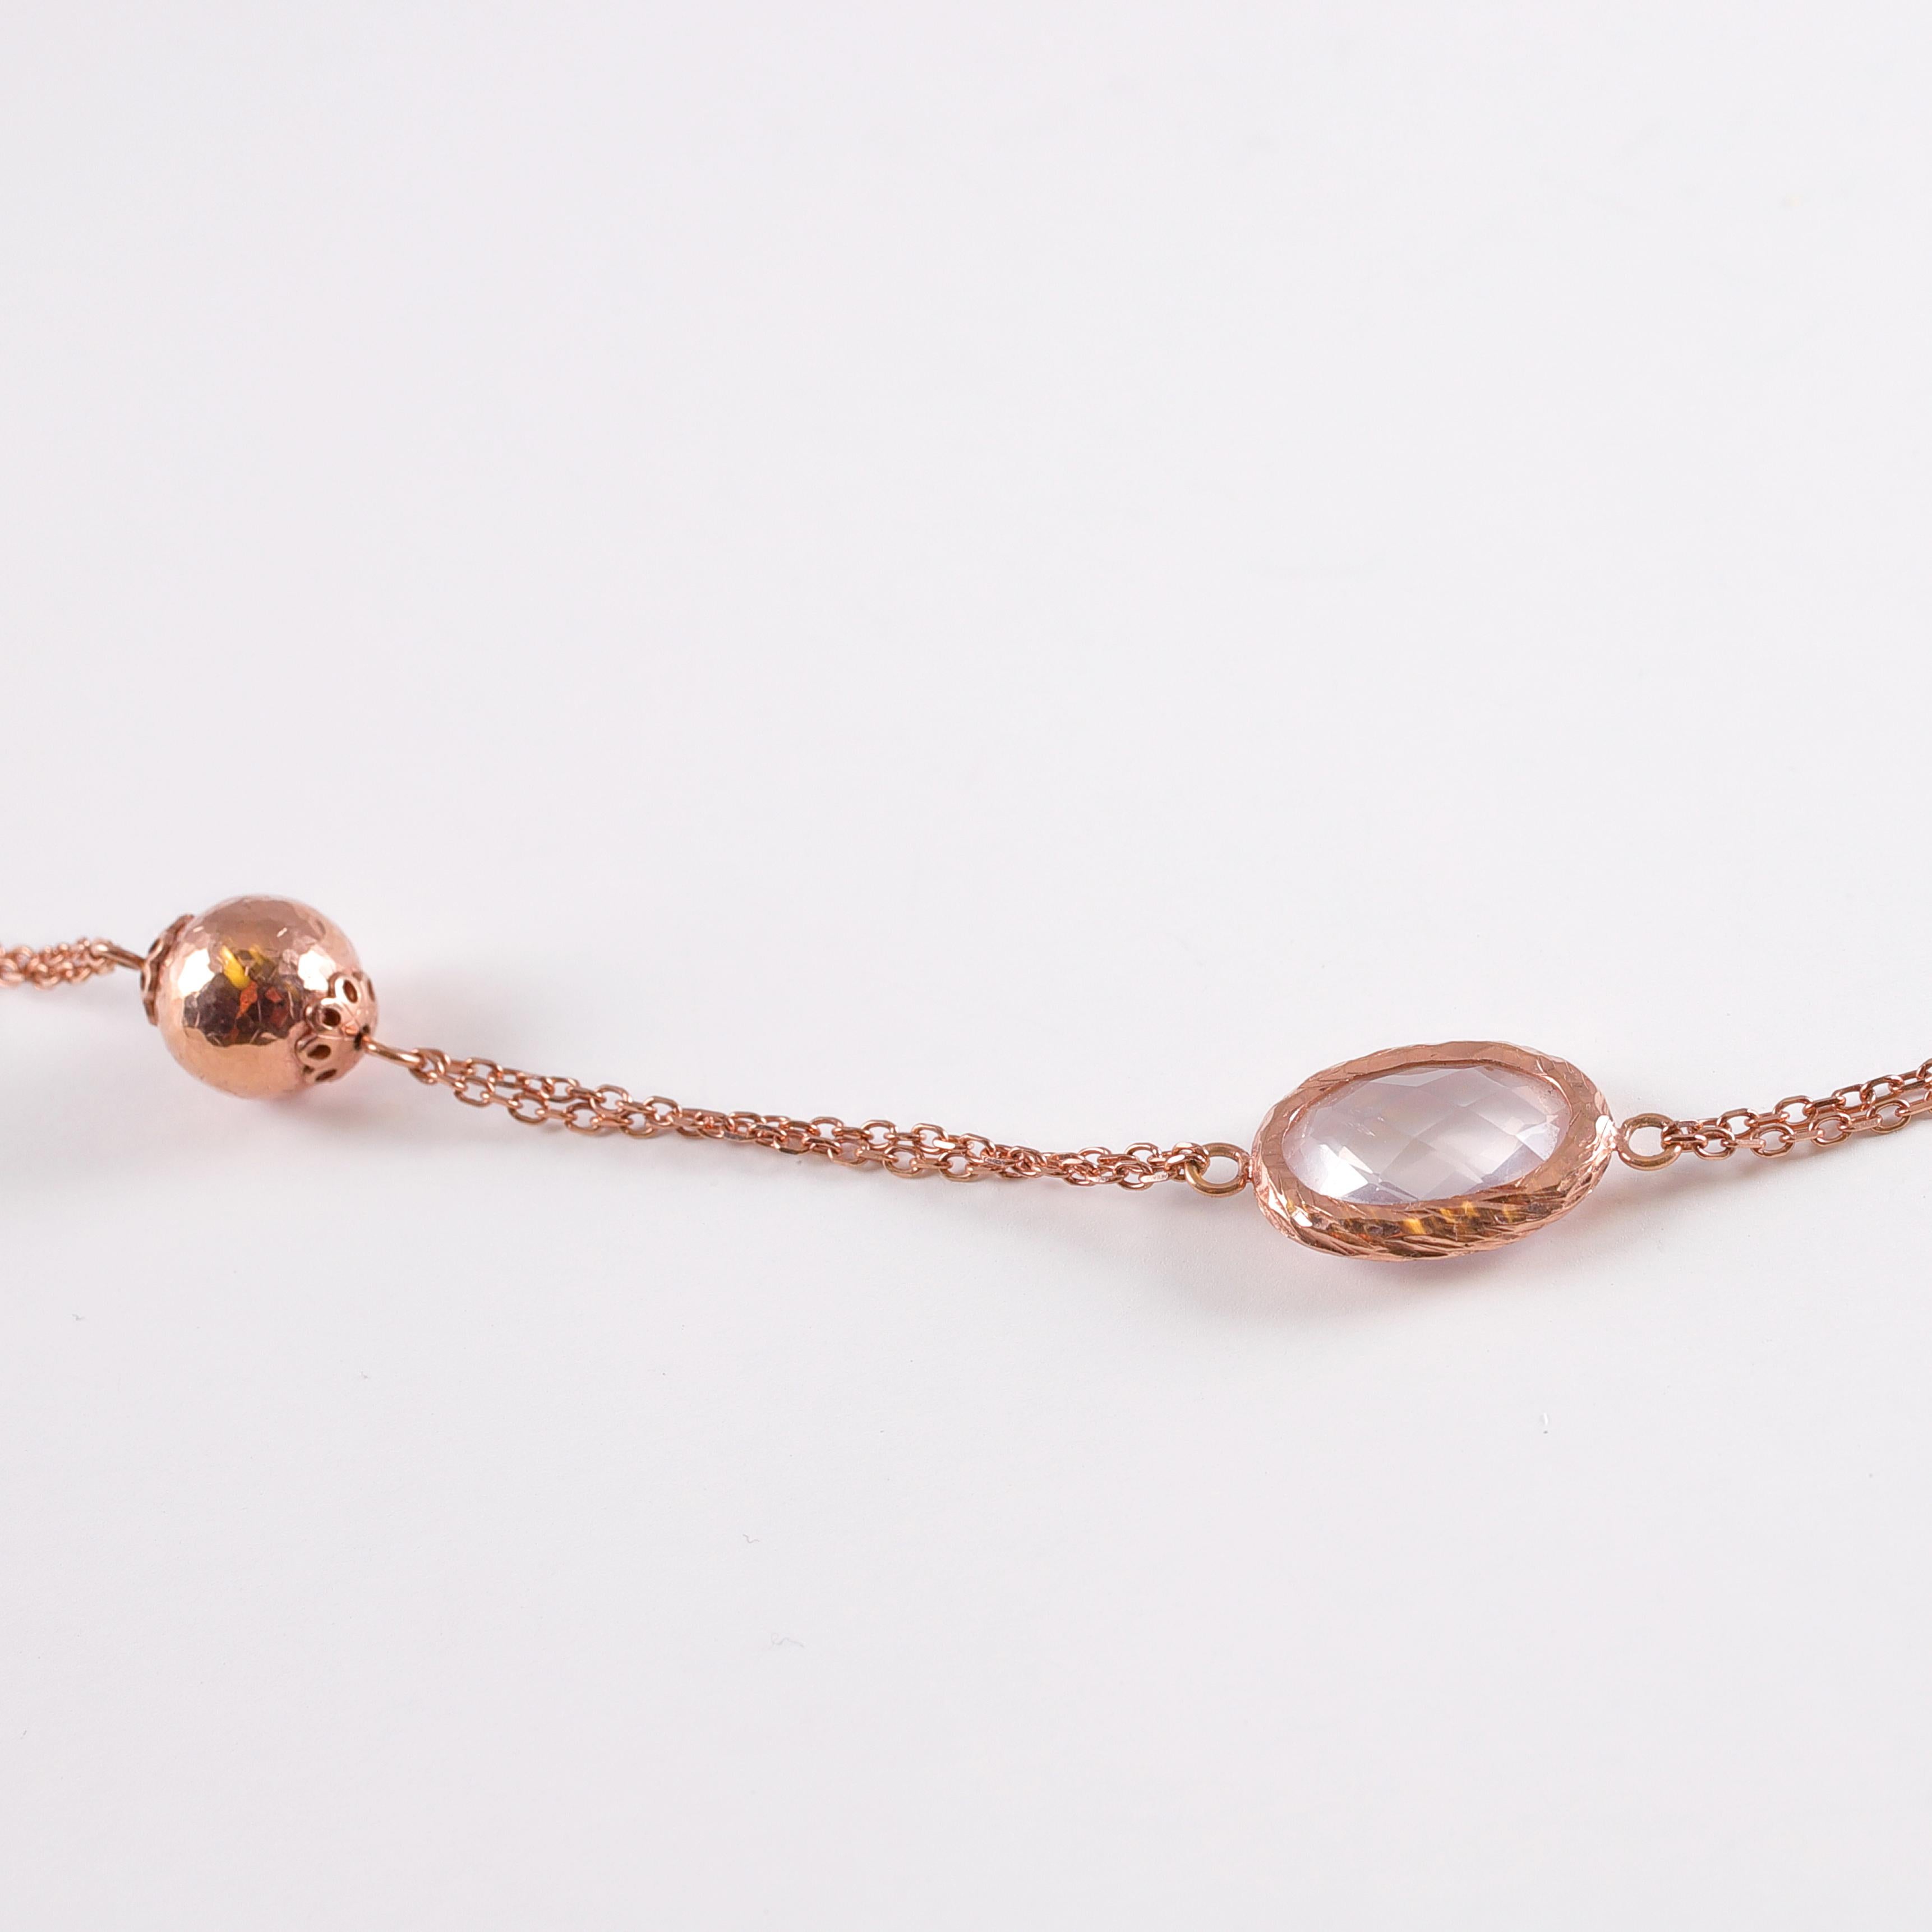 Portez-la comme une longue mèche, nouez-la ou doublez-la pour obtenir trois looks différents !  Ce bijou italien est en or rose 14 carats, qui se marie à merveille avec les perles, le quartz et les perles.